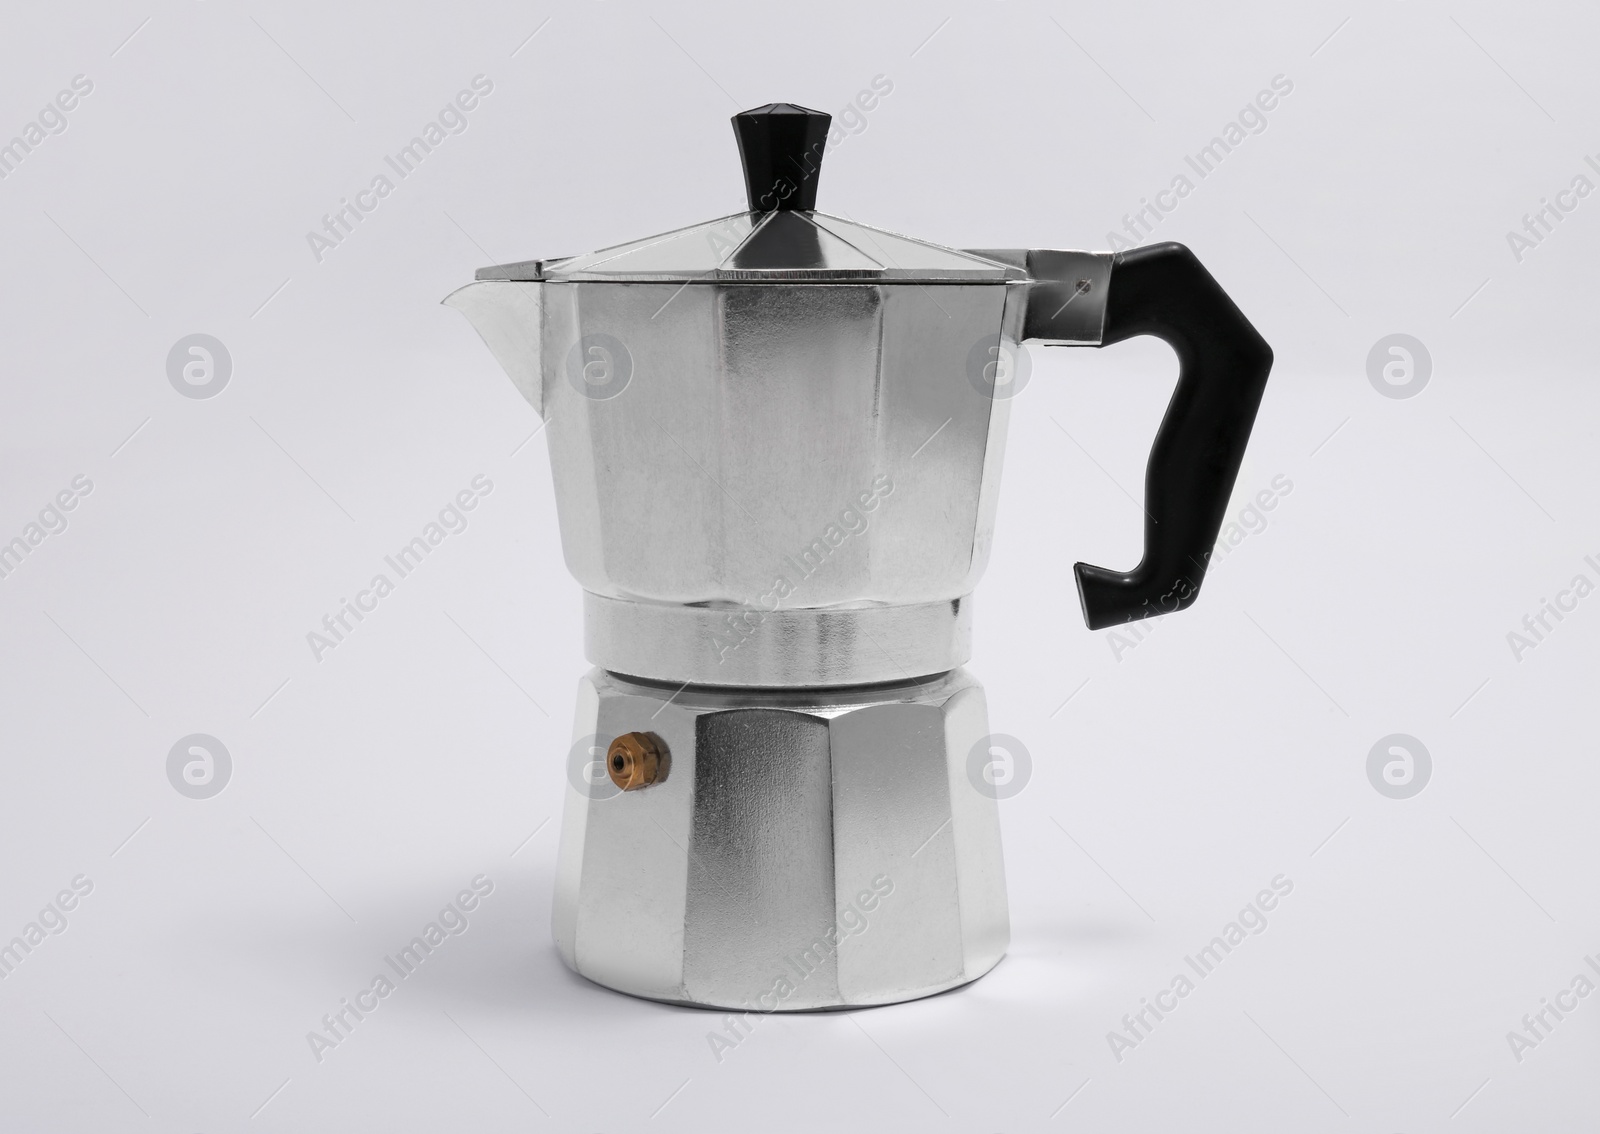 Photo of Moka pot on white background. Coffee maker